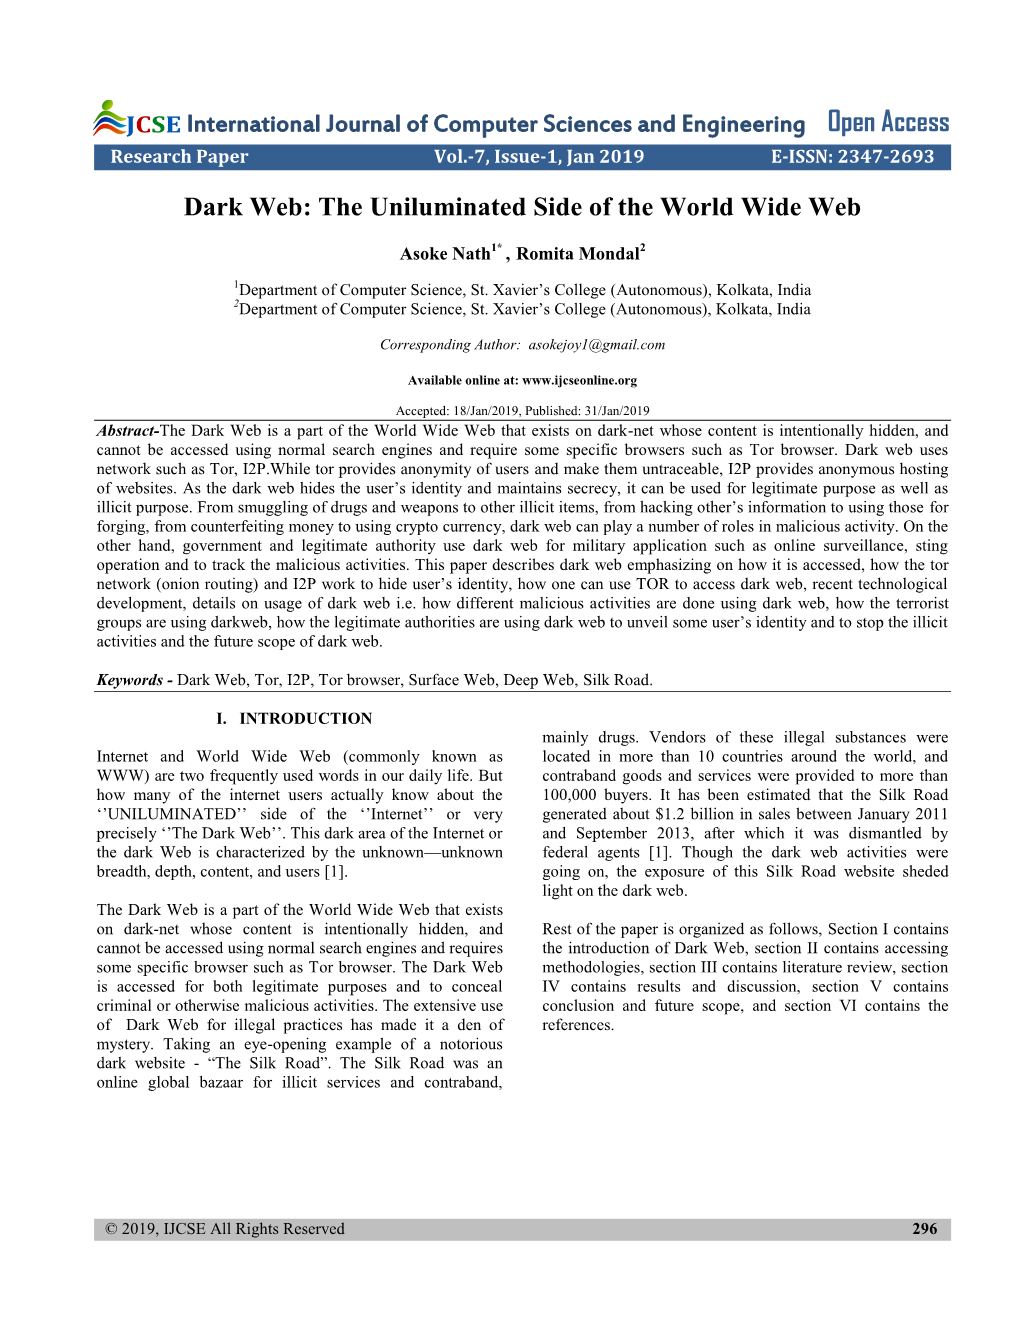 Dark Web: the Uniluminated Side of the World Wide Web